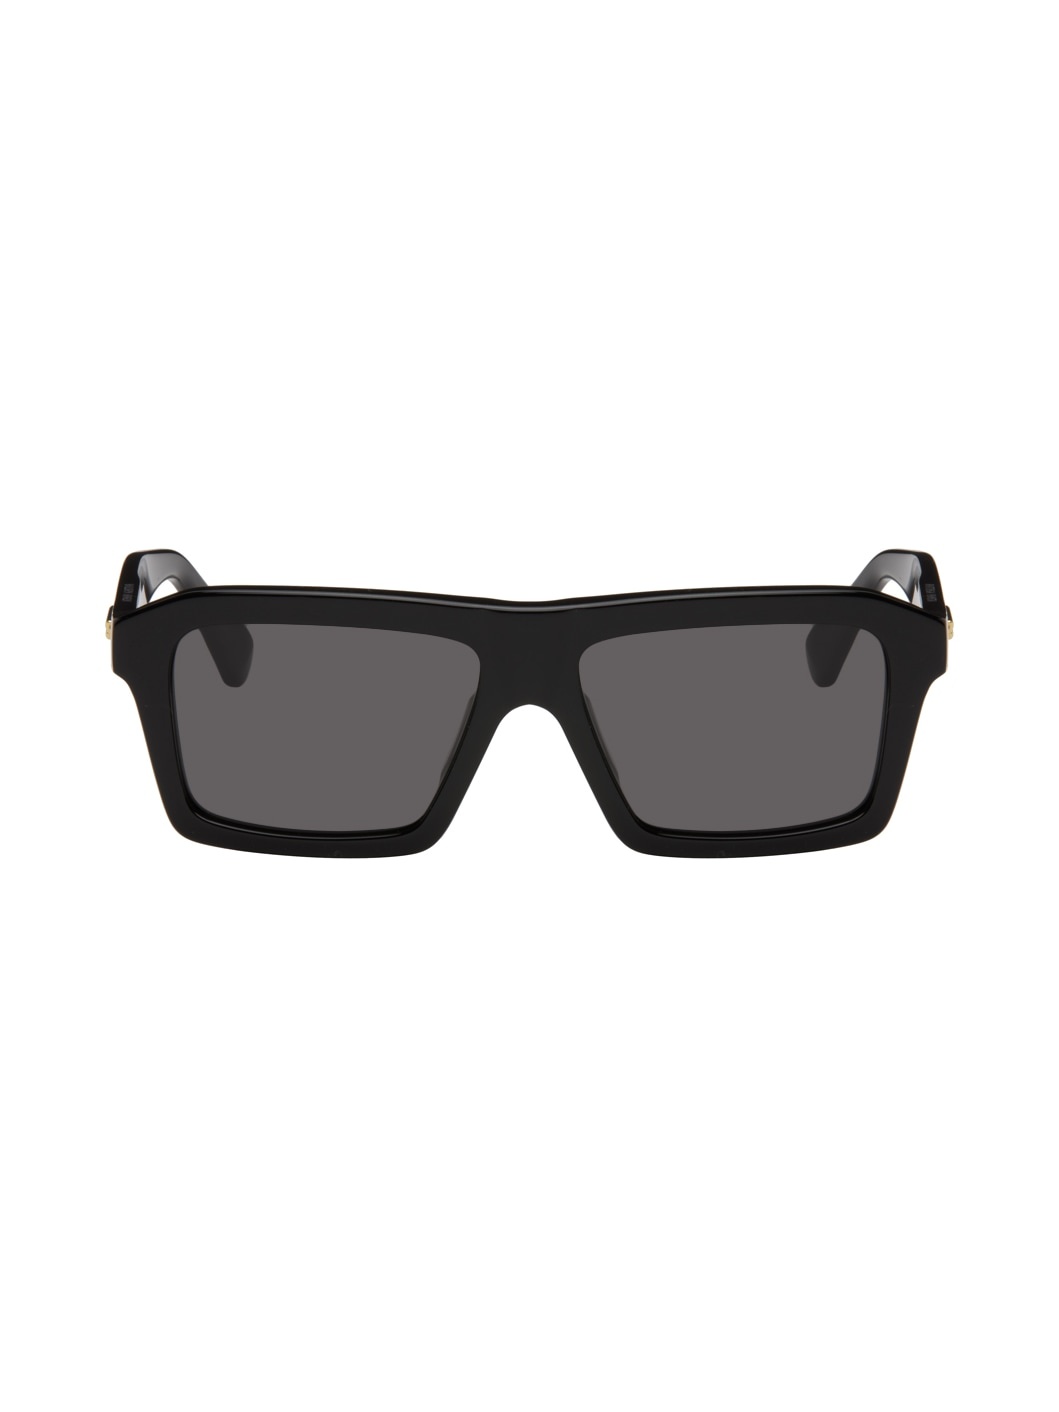 Black Rectangular Sunglasses - 1